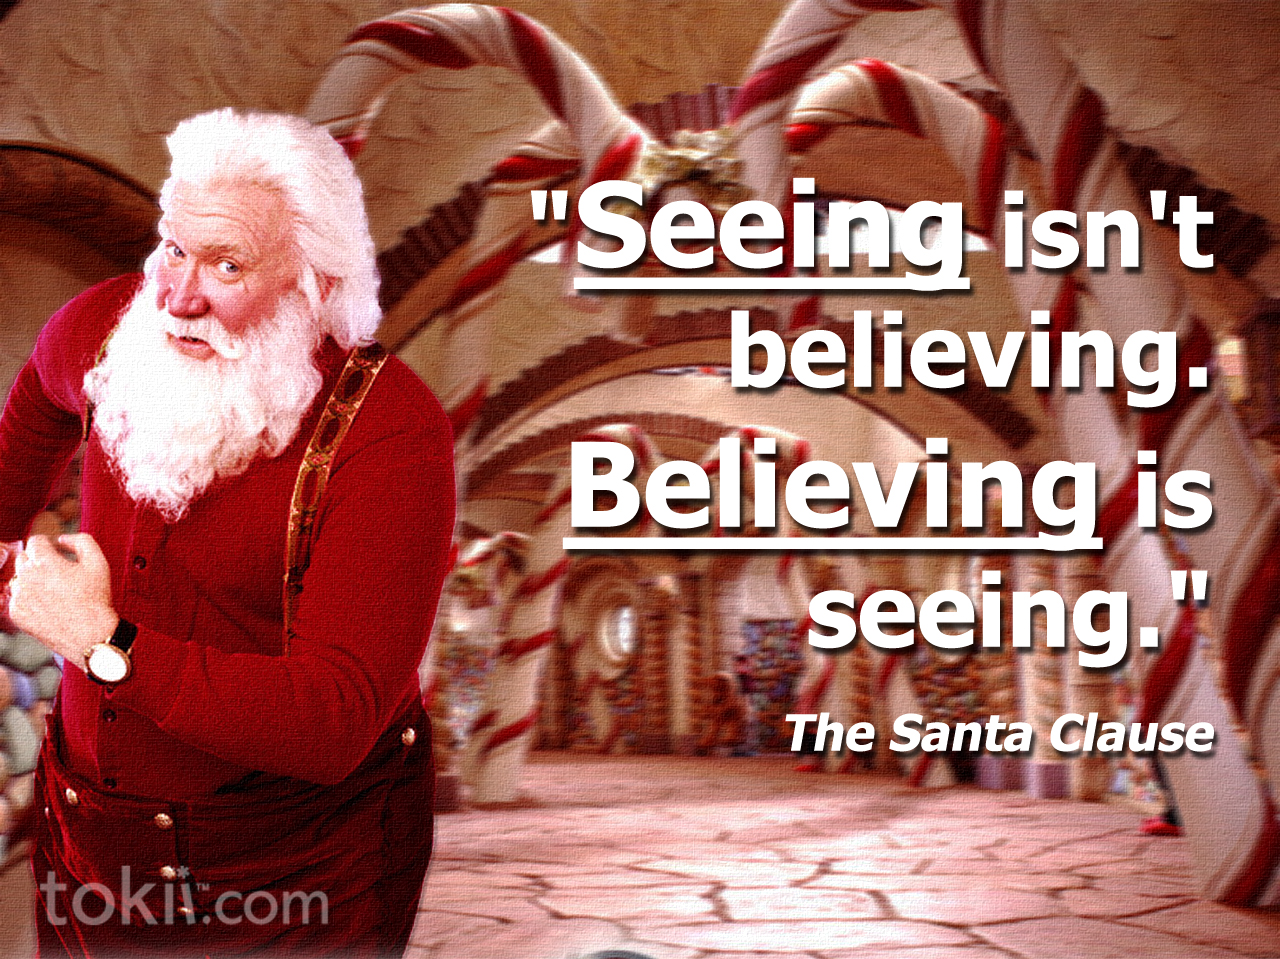 The Santa Clause Movie Quotes. QuotesGram